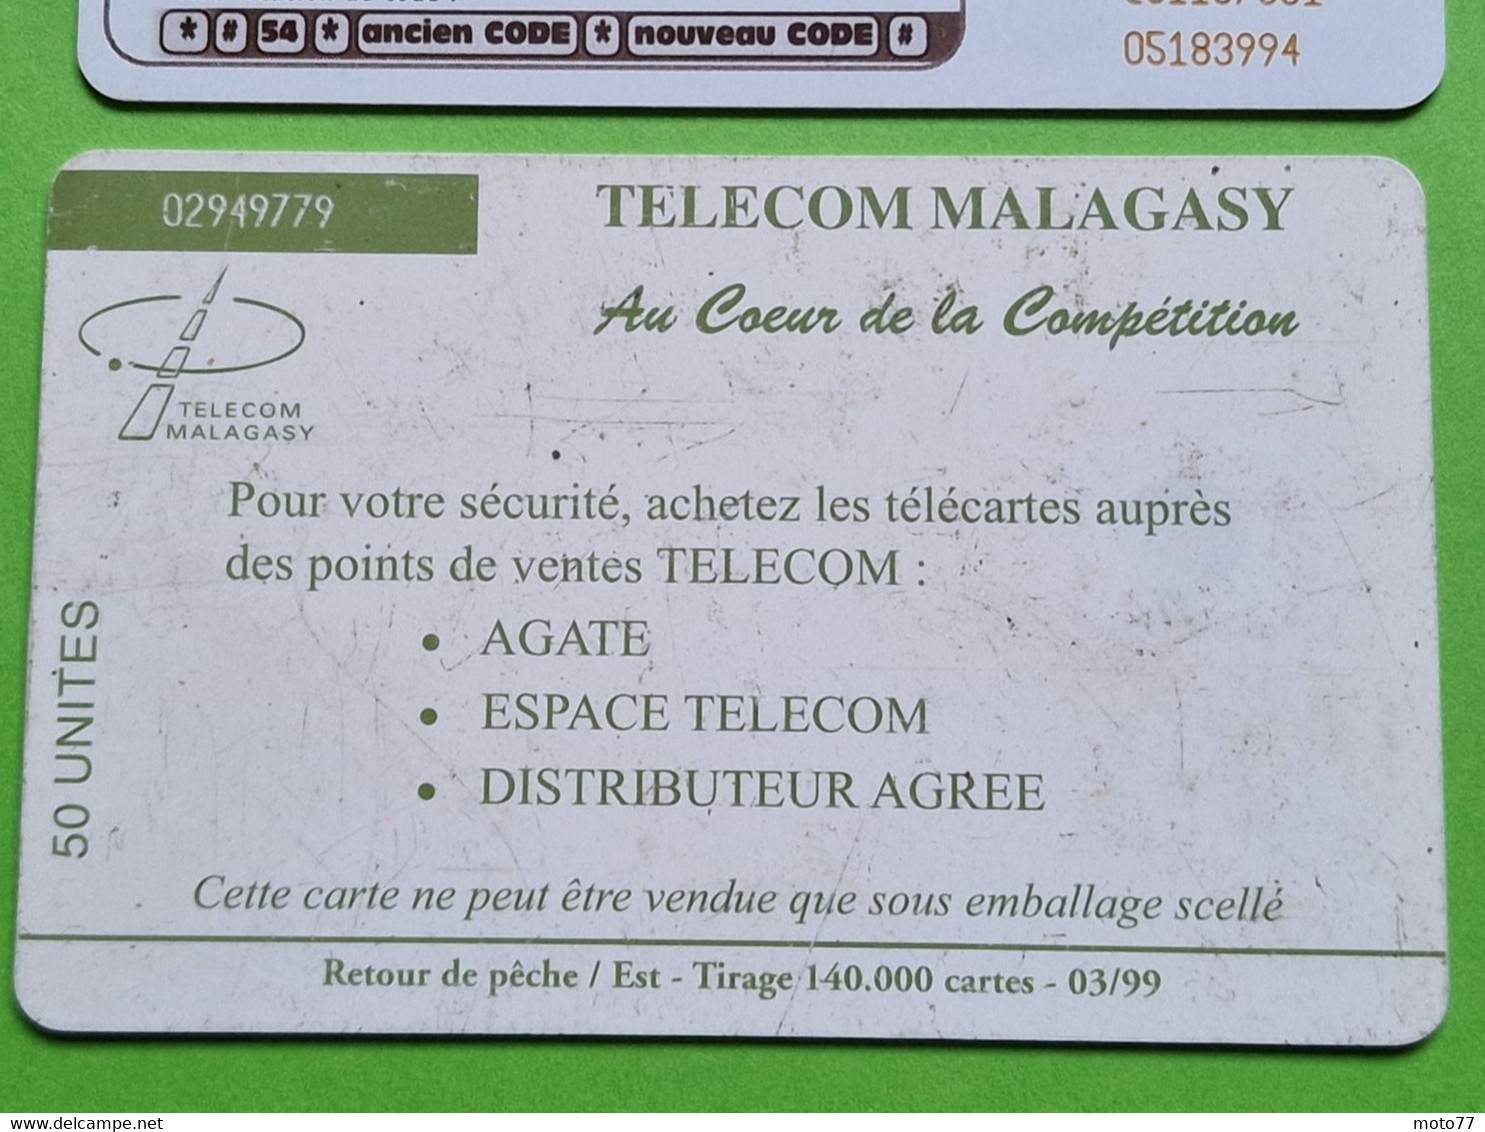 Lot 4 cartes téléphonique MADAGASCAR - VIDE - Télécarte Cabine téléphone - Paysages Mer Pirogue Pêcheur Plage - 1999